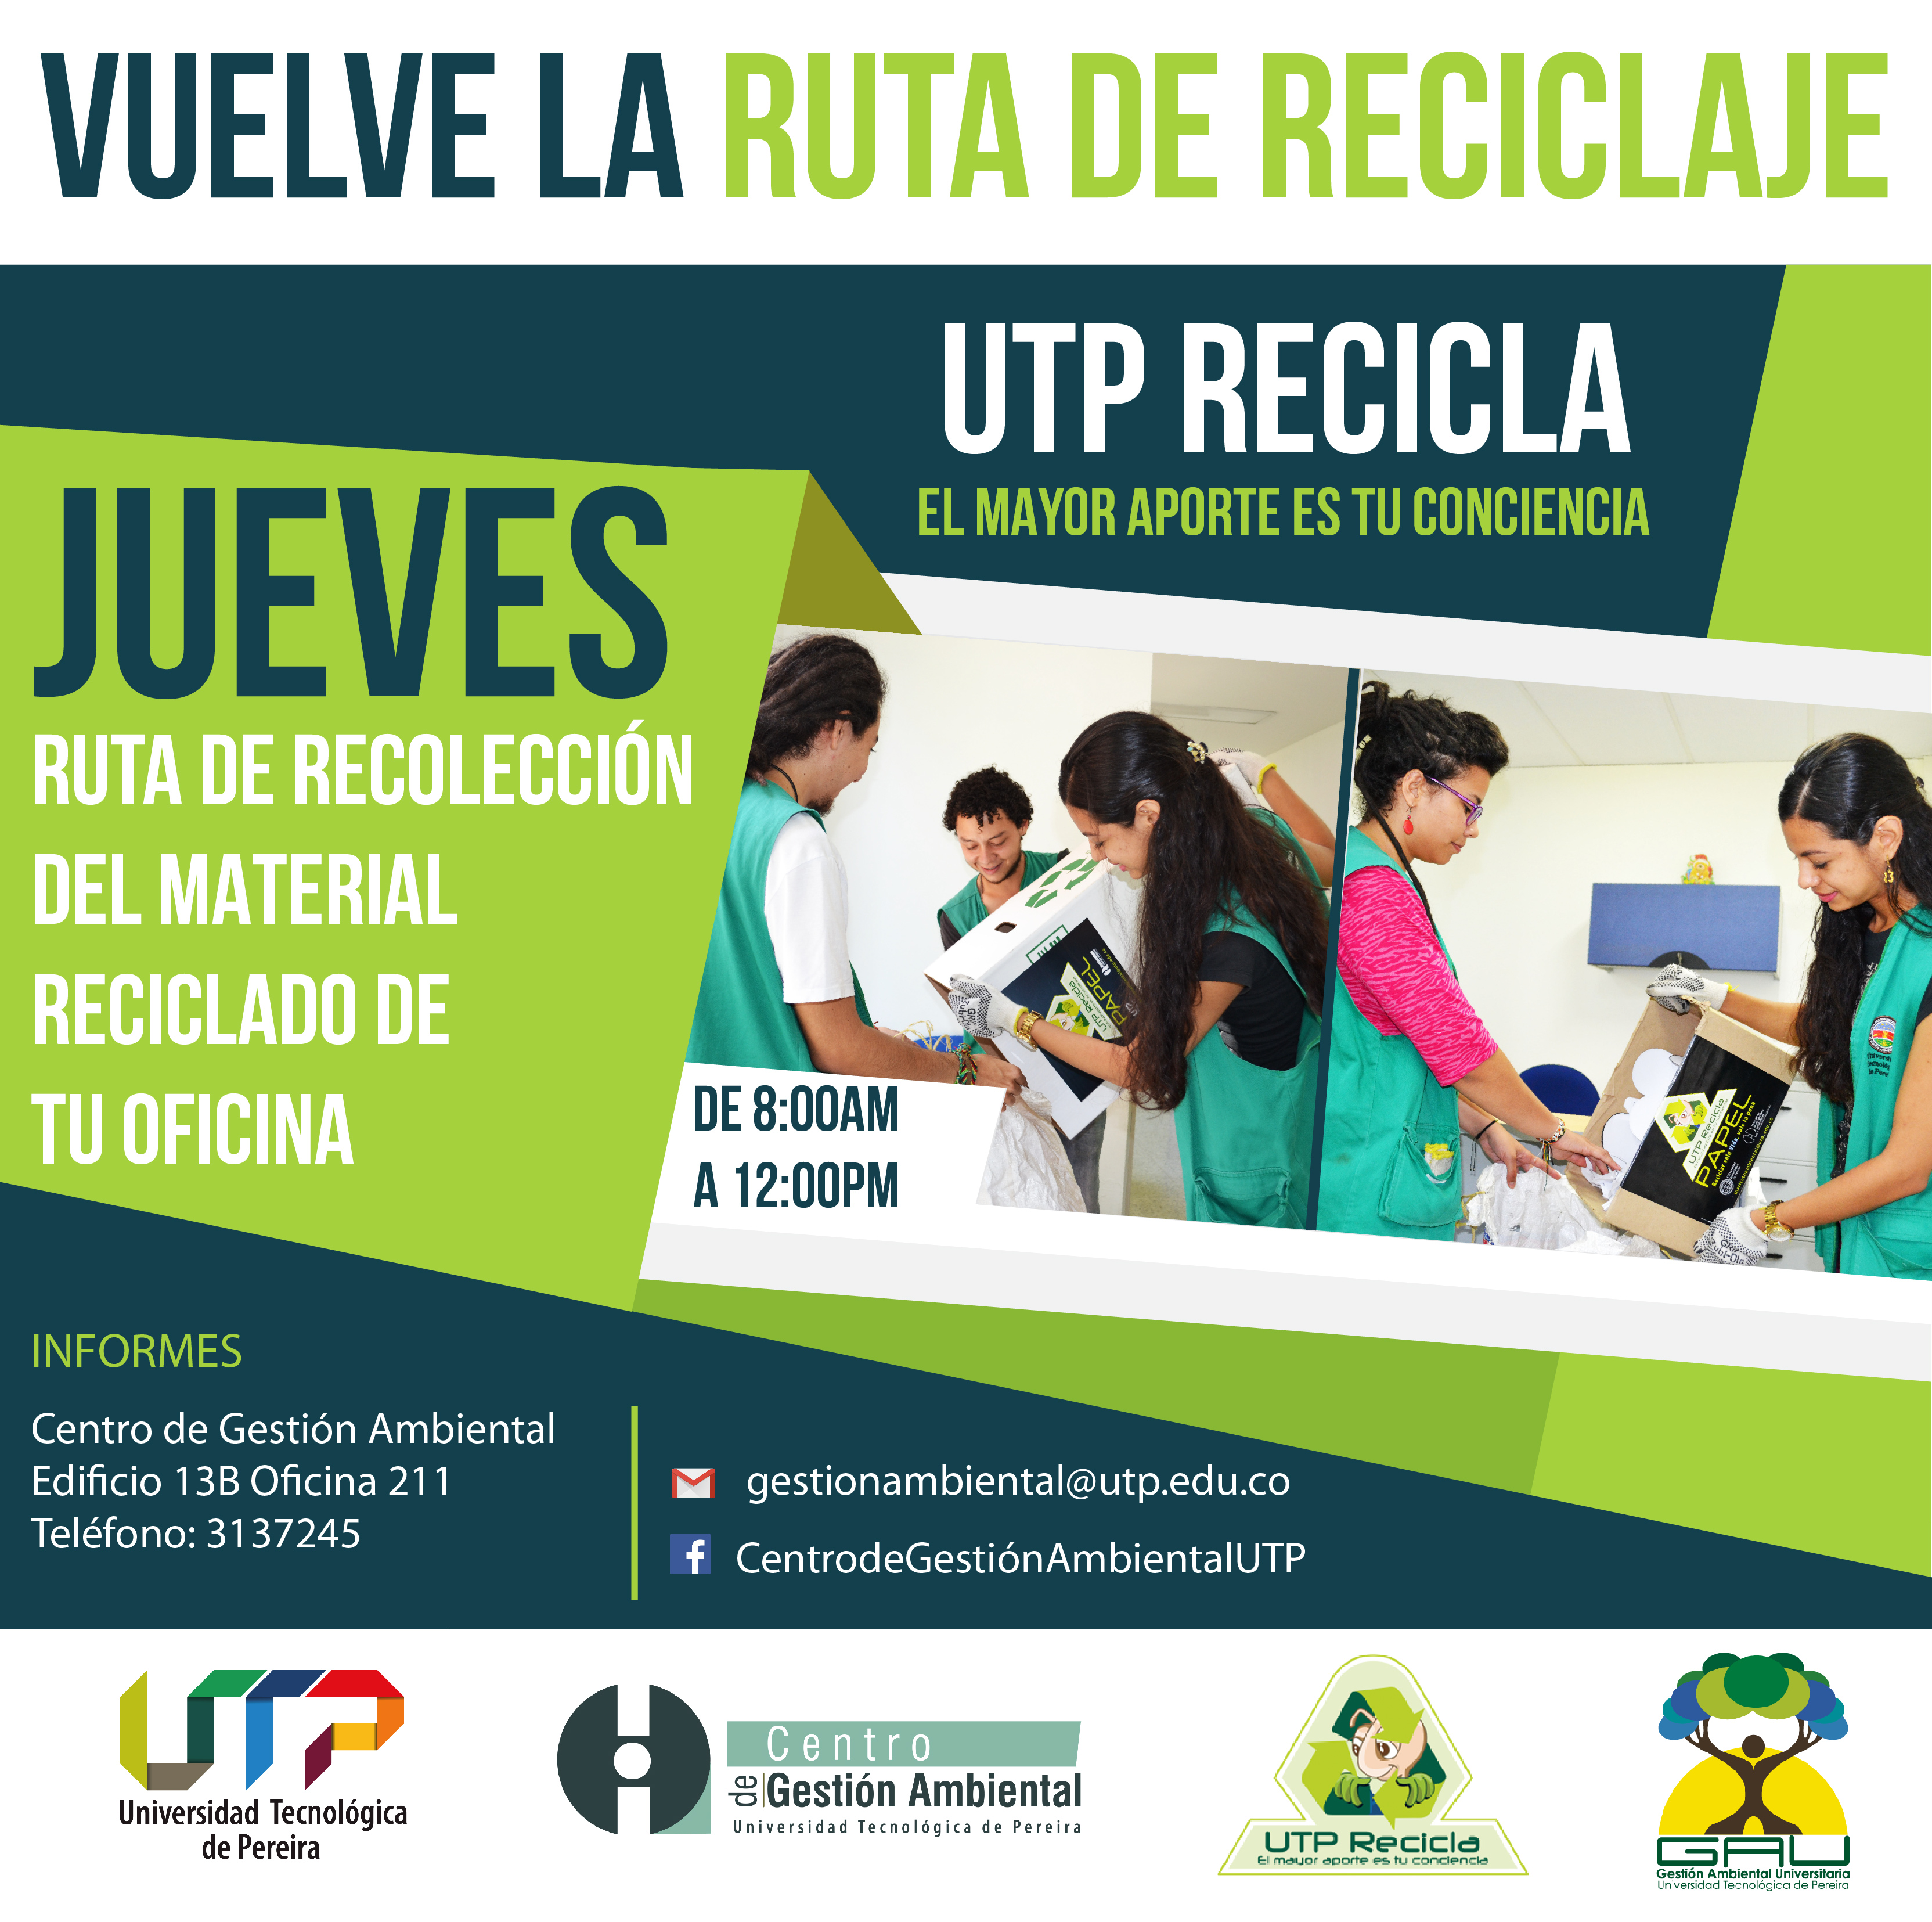 Vuelve la ruta de recolección de UTP Recicla: